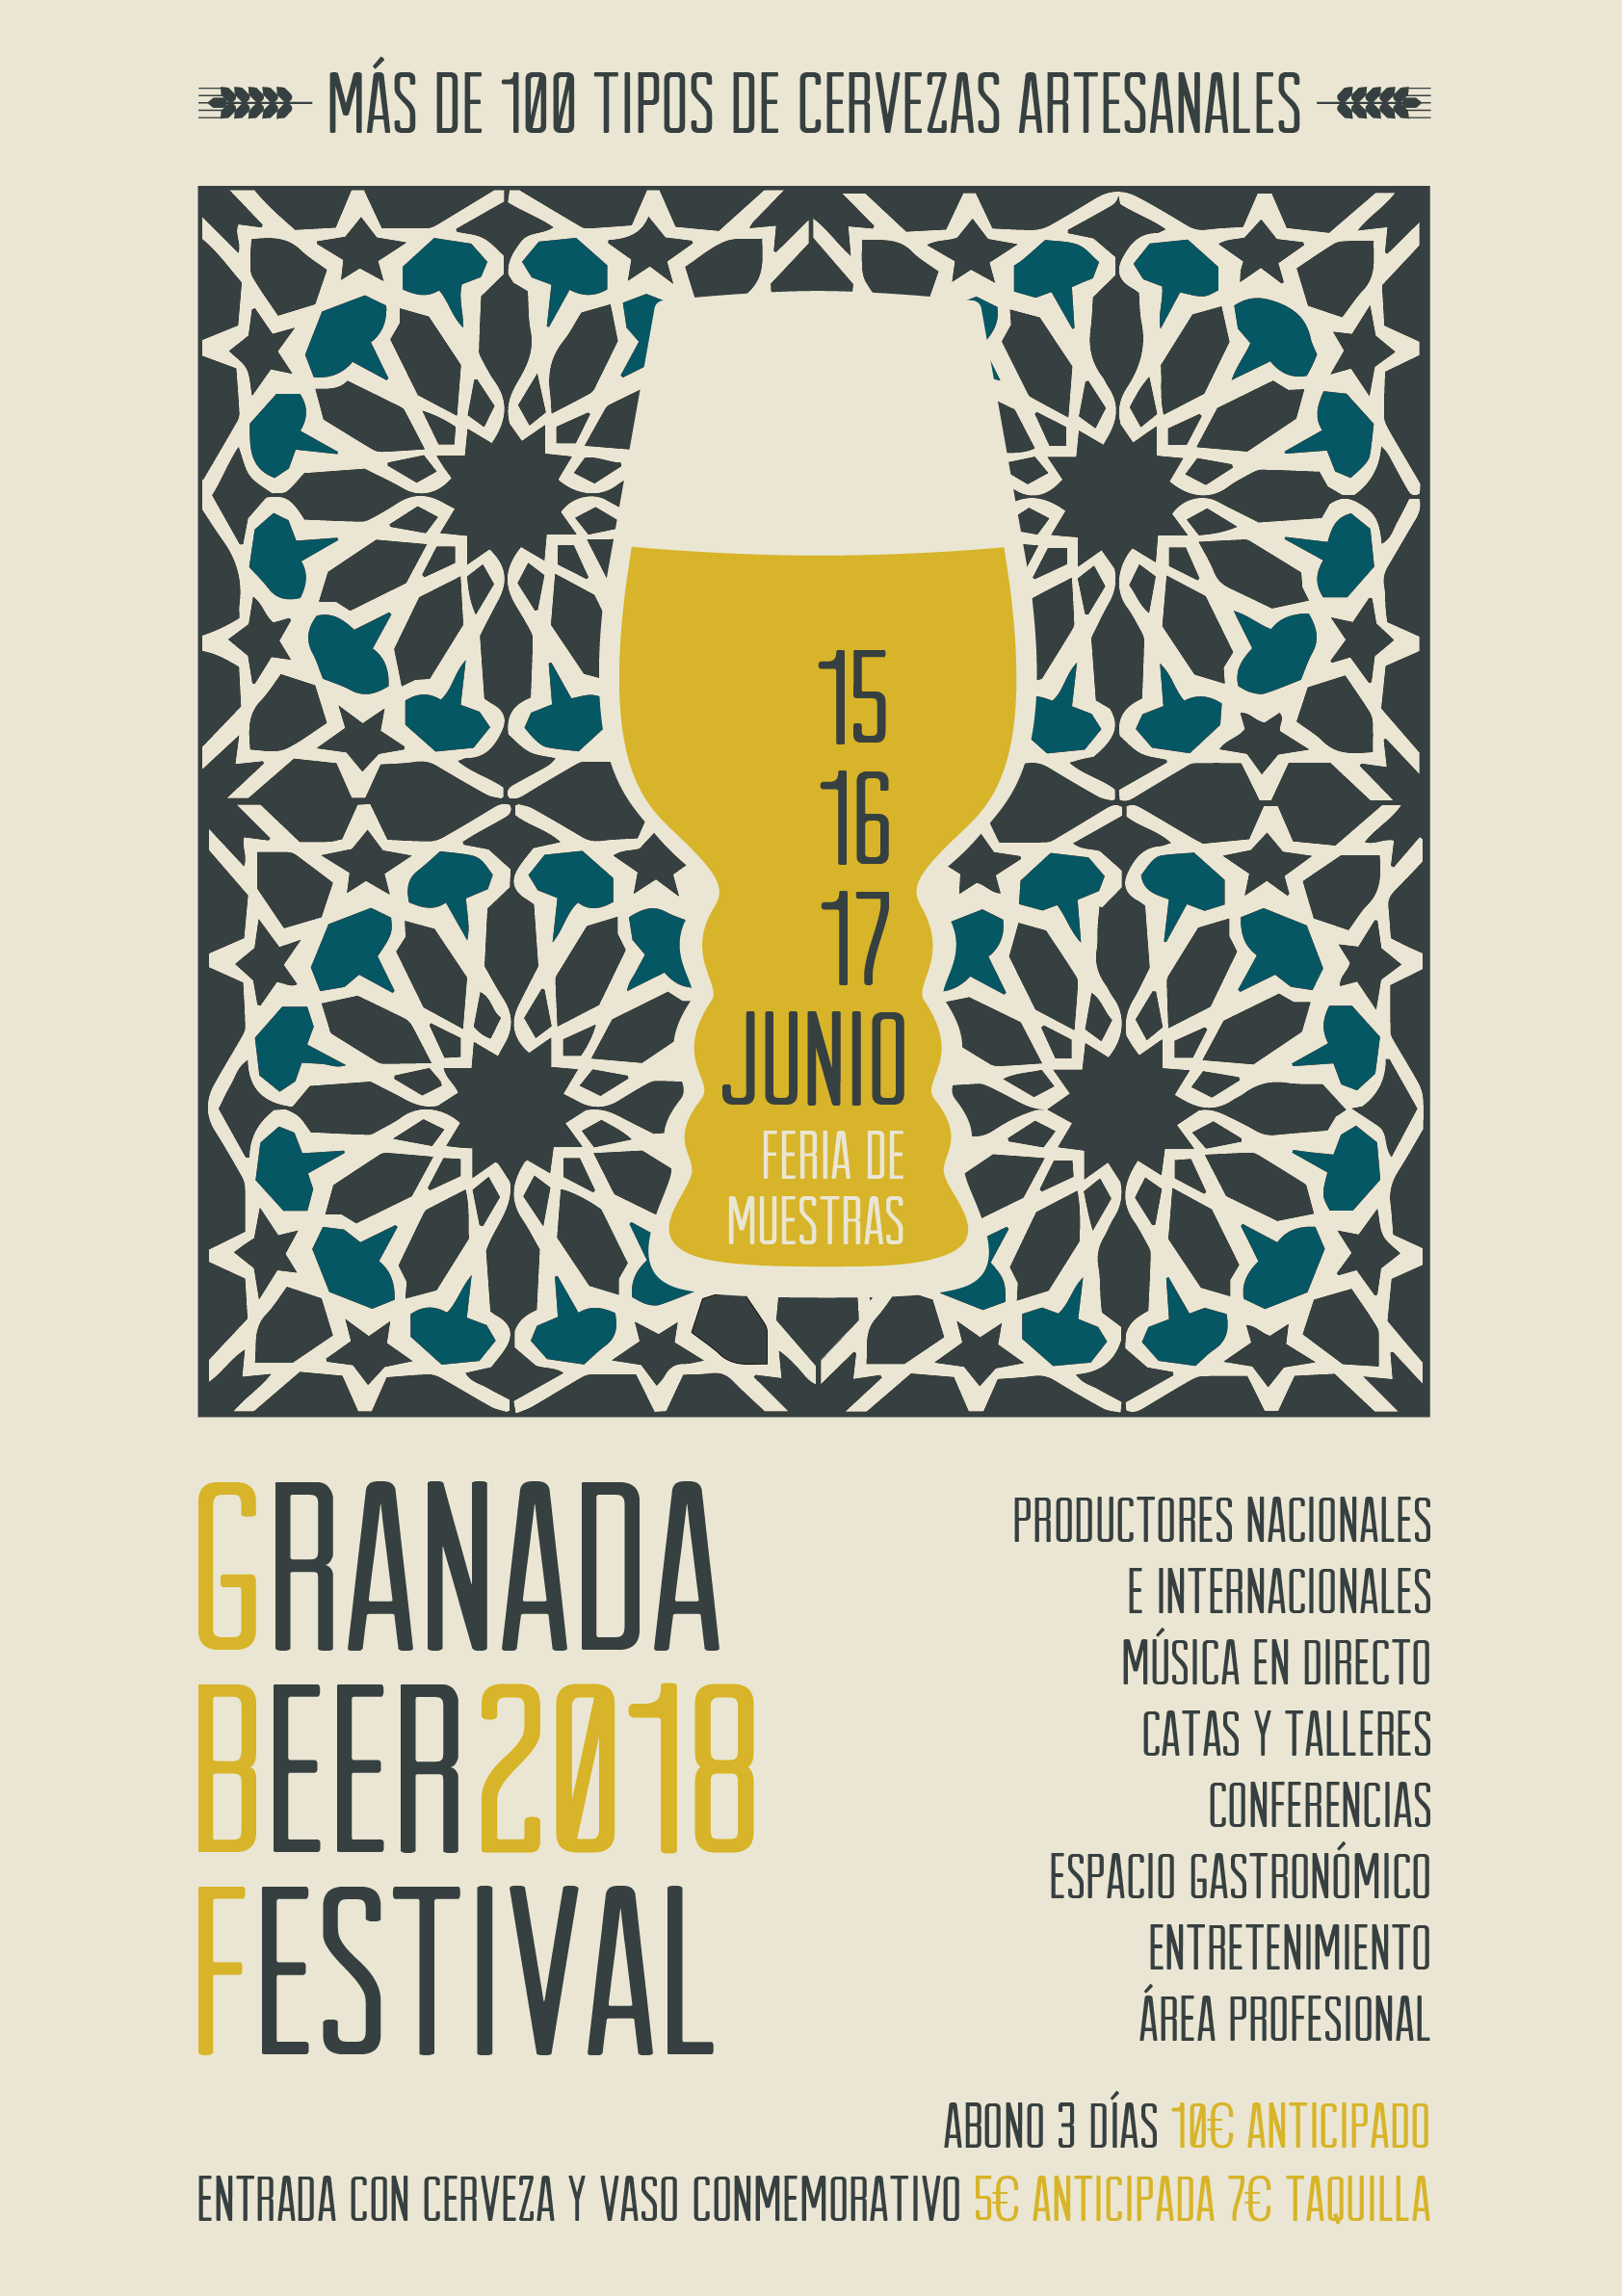 Granada Beer Festival nos traerá las mejores cervezas artesanas del mundo